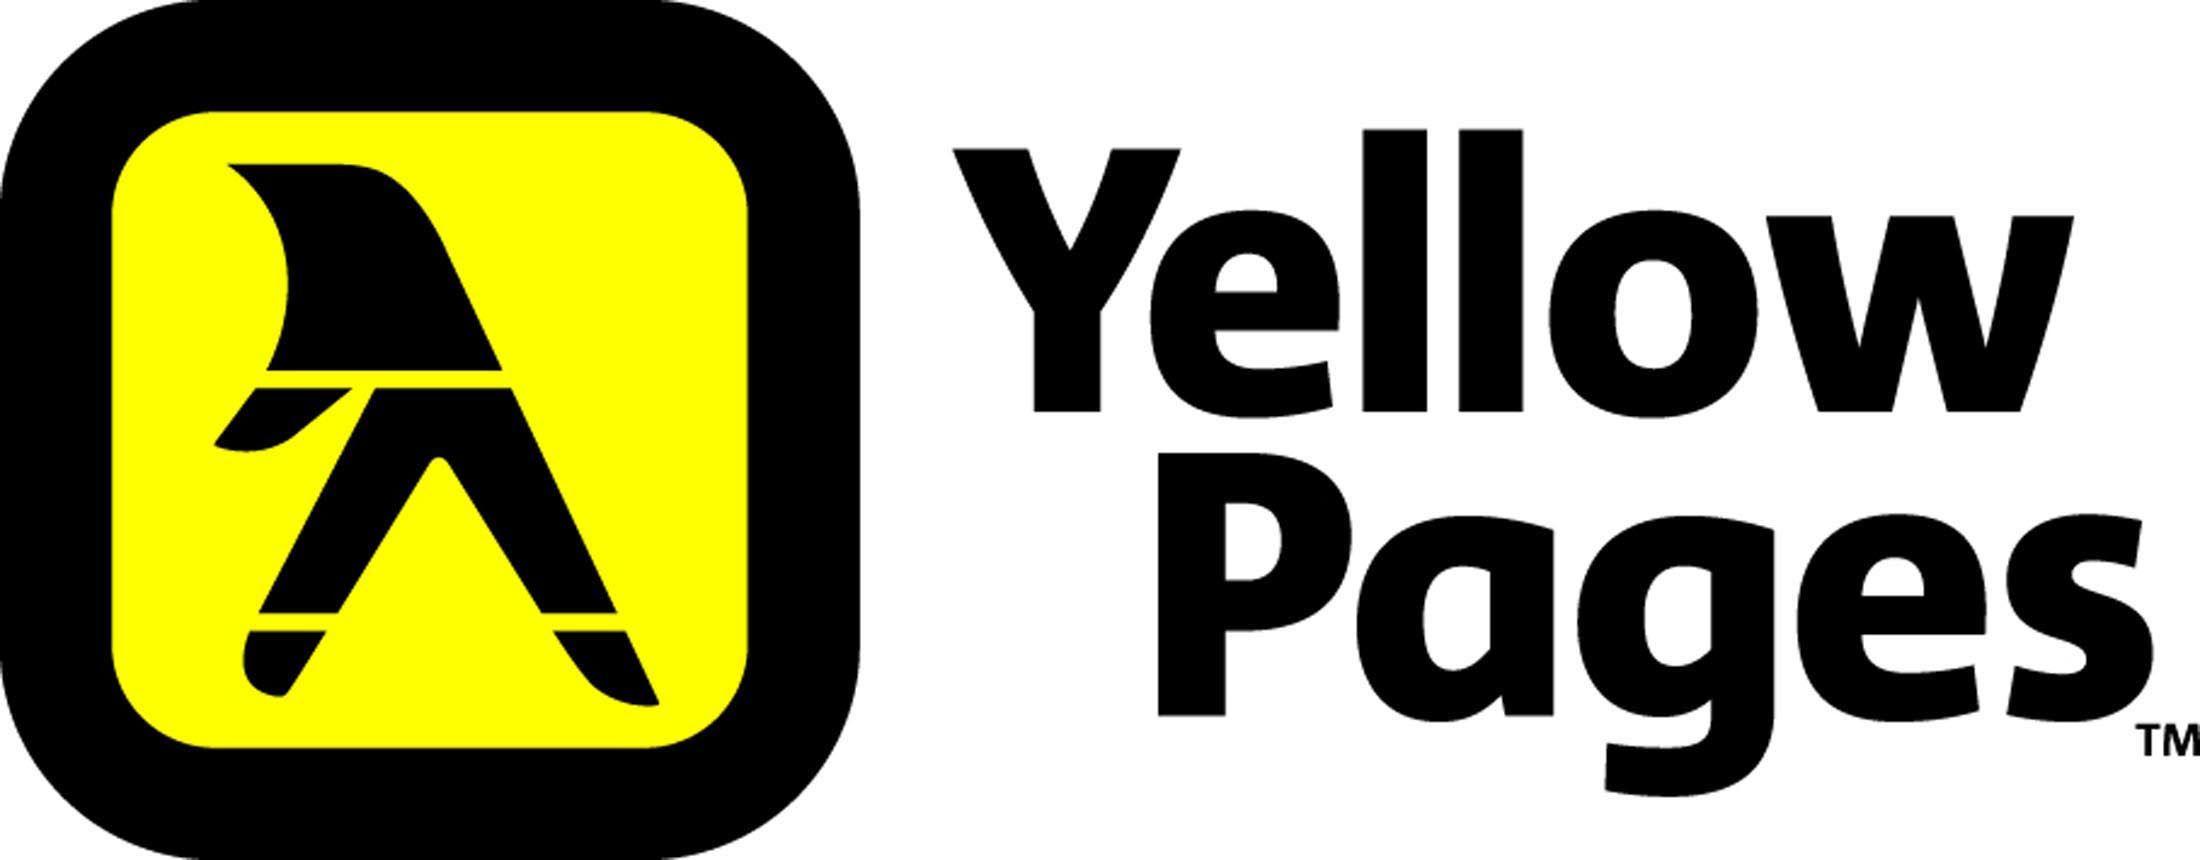 Yellow Pages Logo - Resultado de imagen de yellow pages logo | Logos | Pinterest | Logos ...